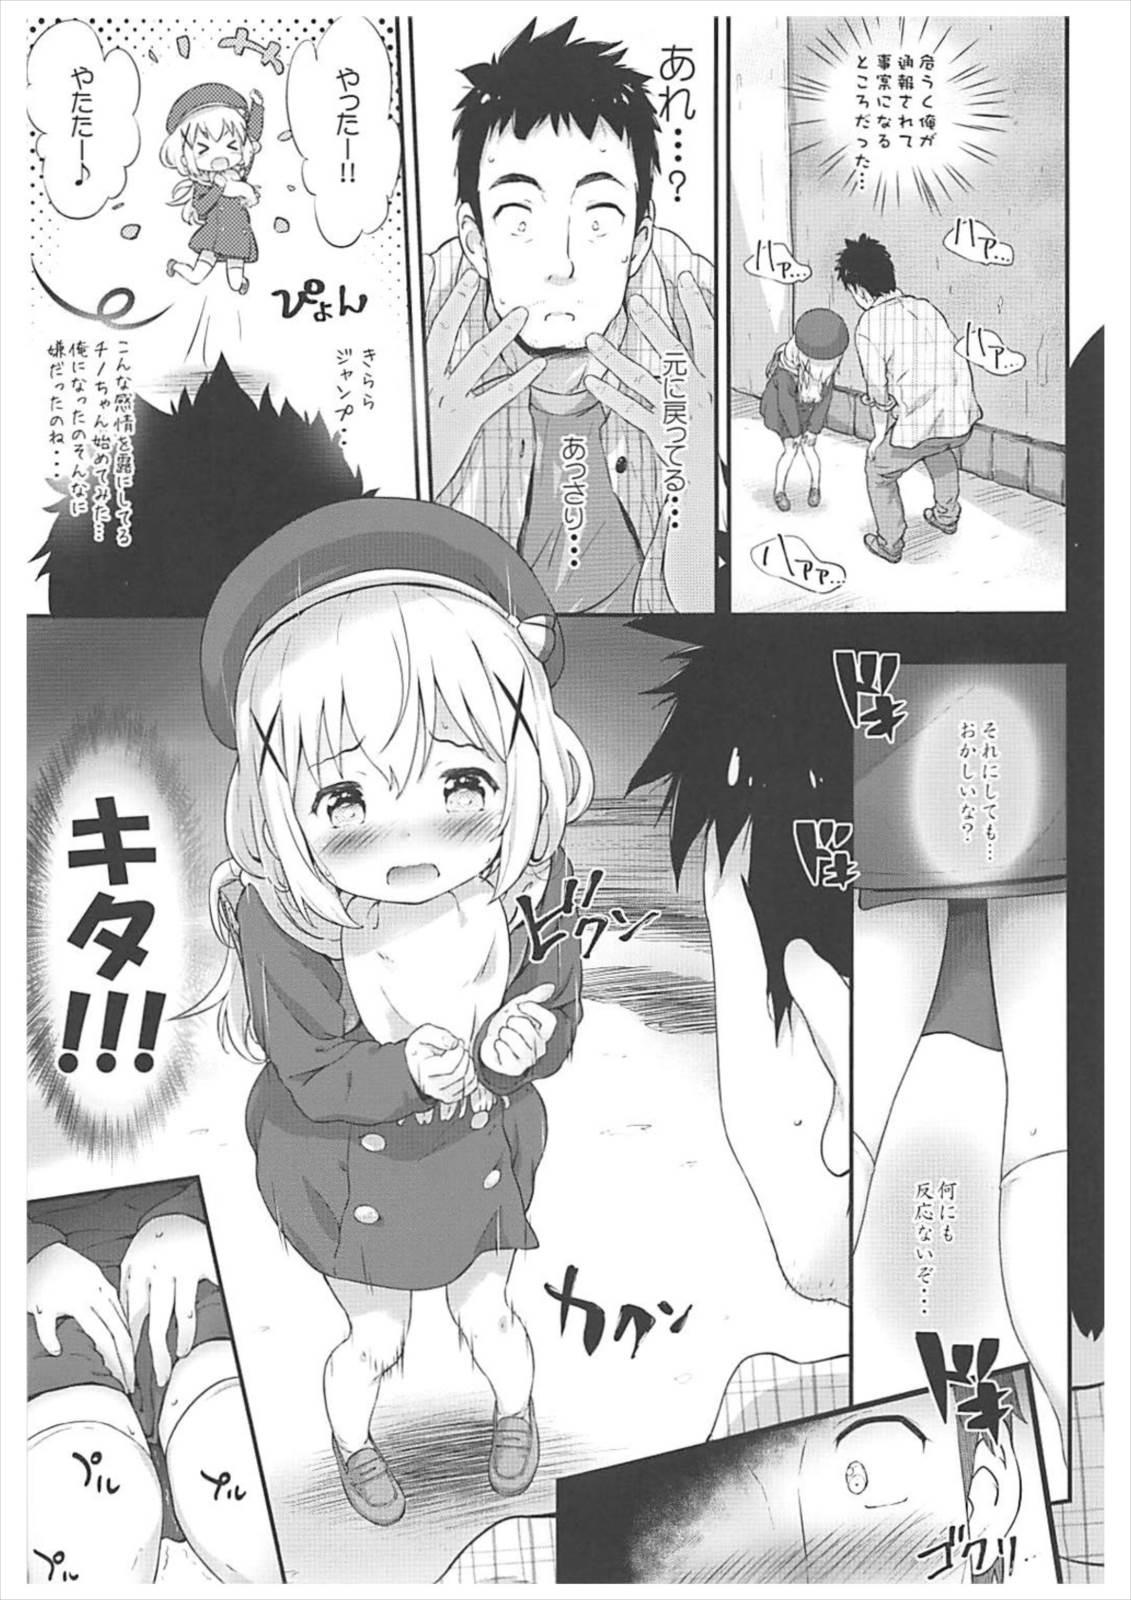 Naughty Toro Musume 14 Chino-chan Hajimemashita 2 kai - Gochuumon wa usagi desu ka Clothed - Page 6